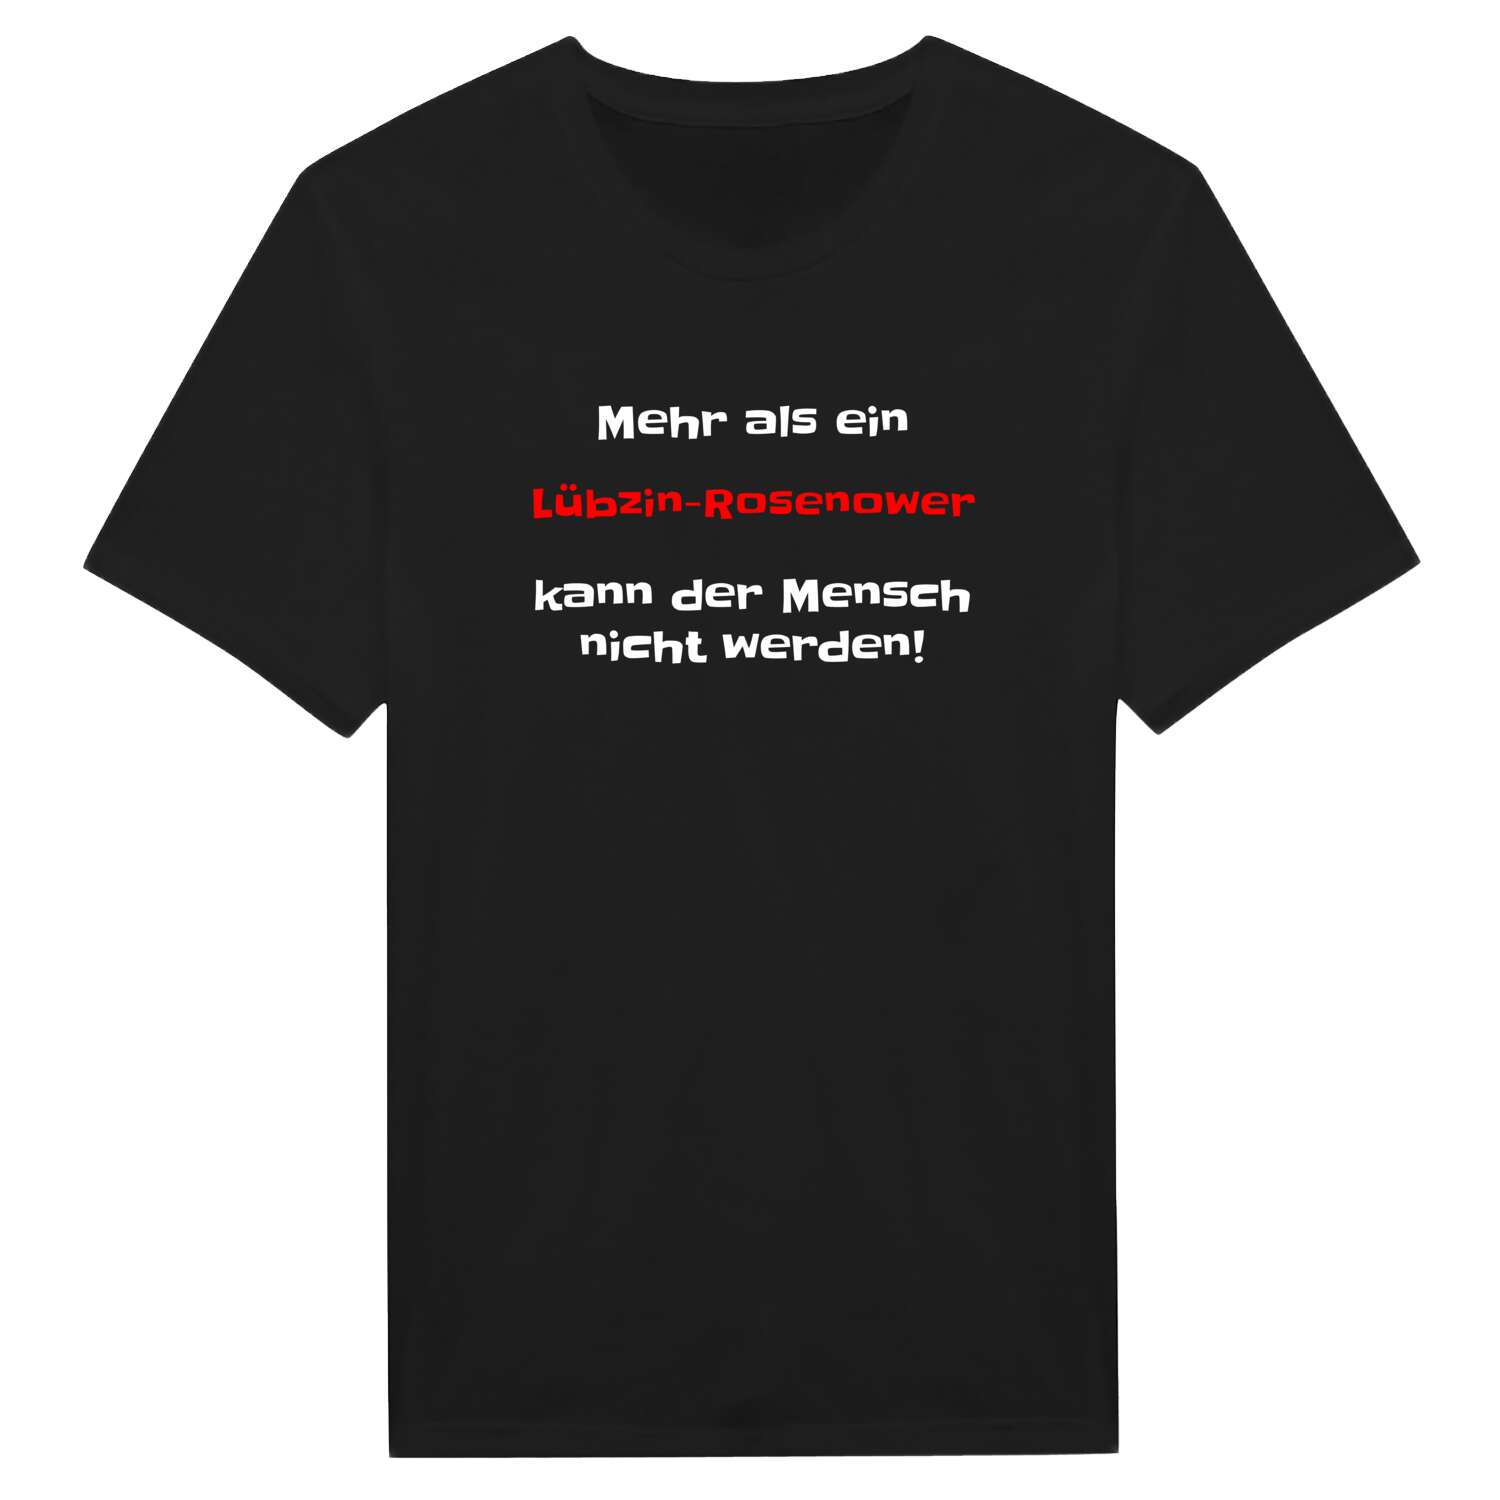 Lübzin-Rosenow T-Shirt »Mehr als ein«